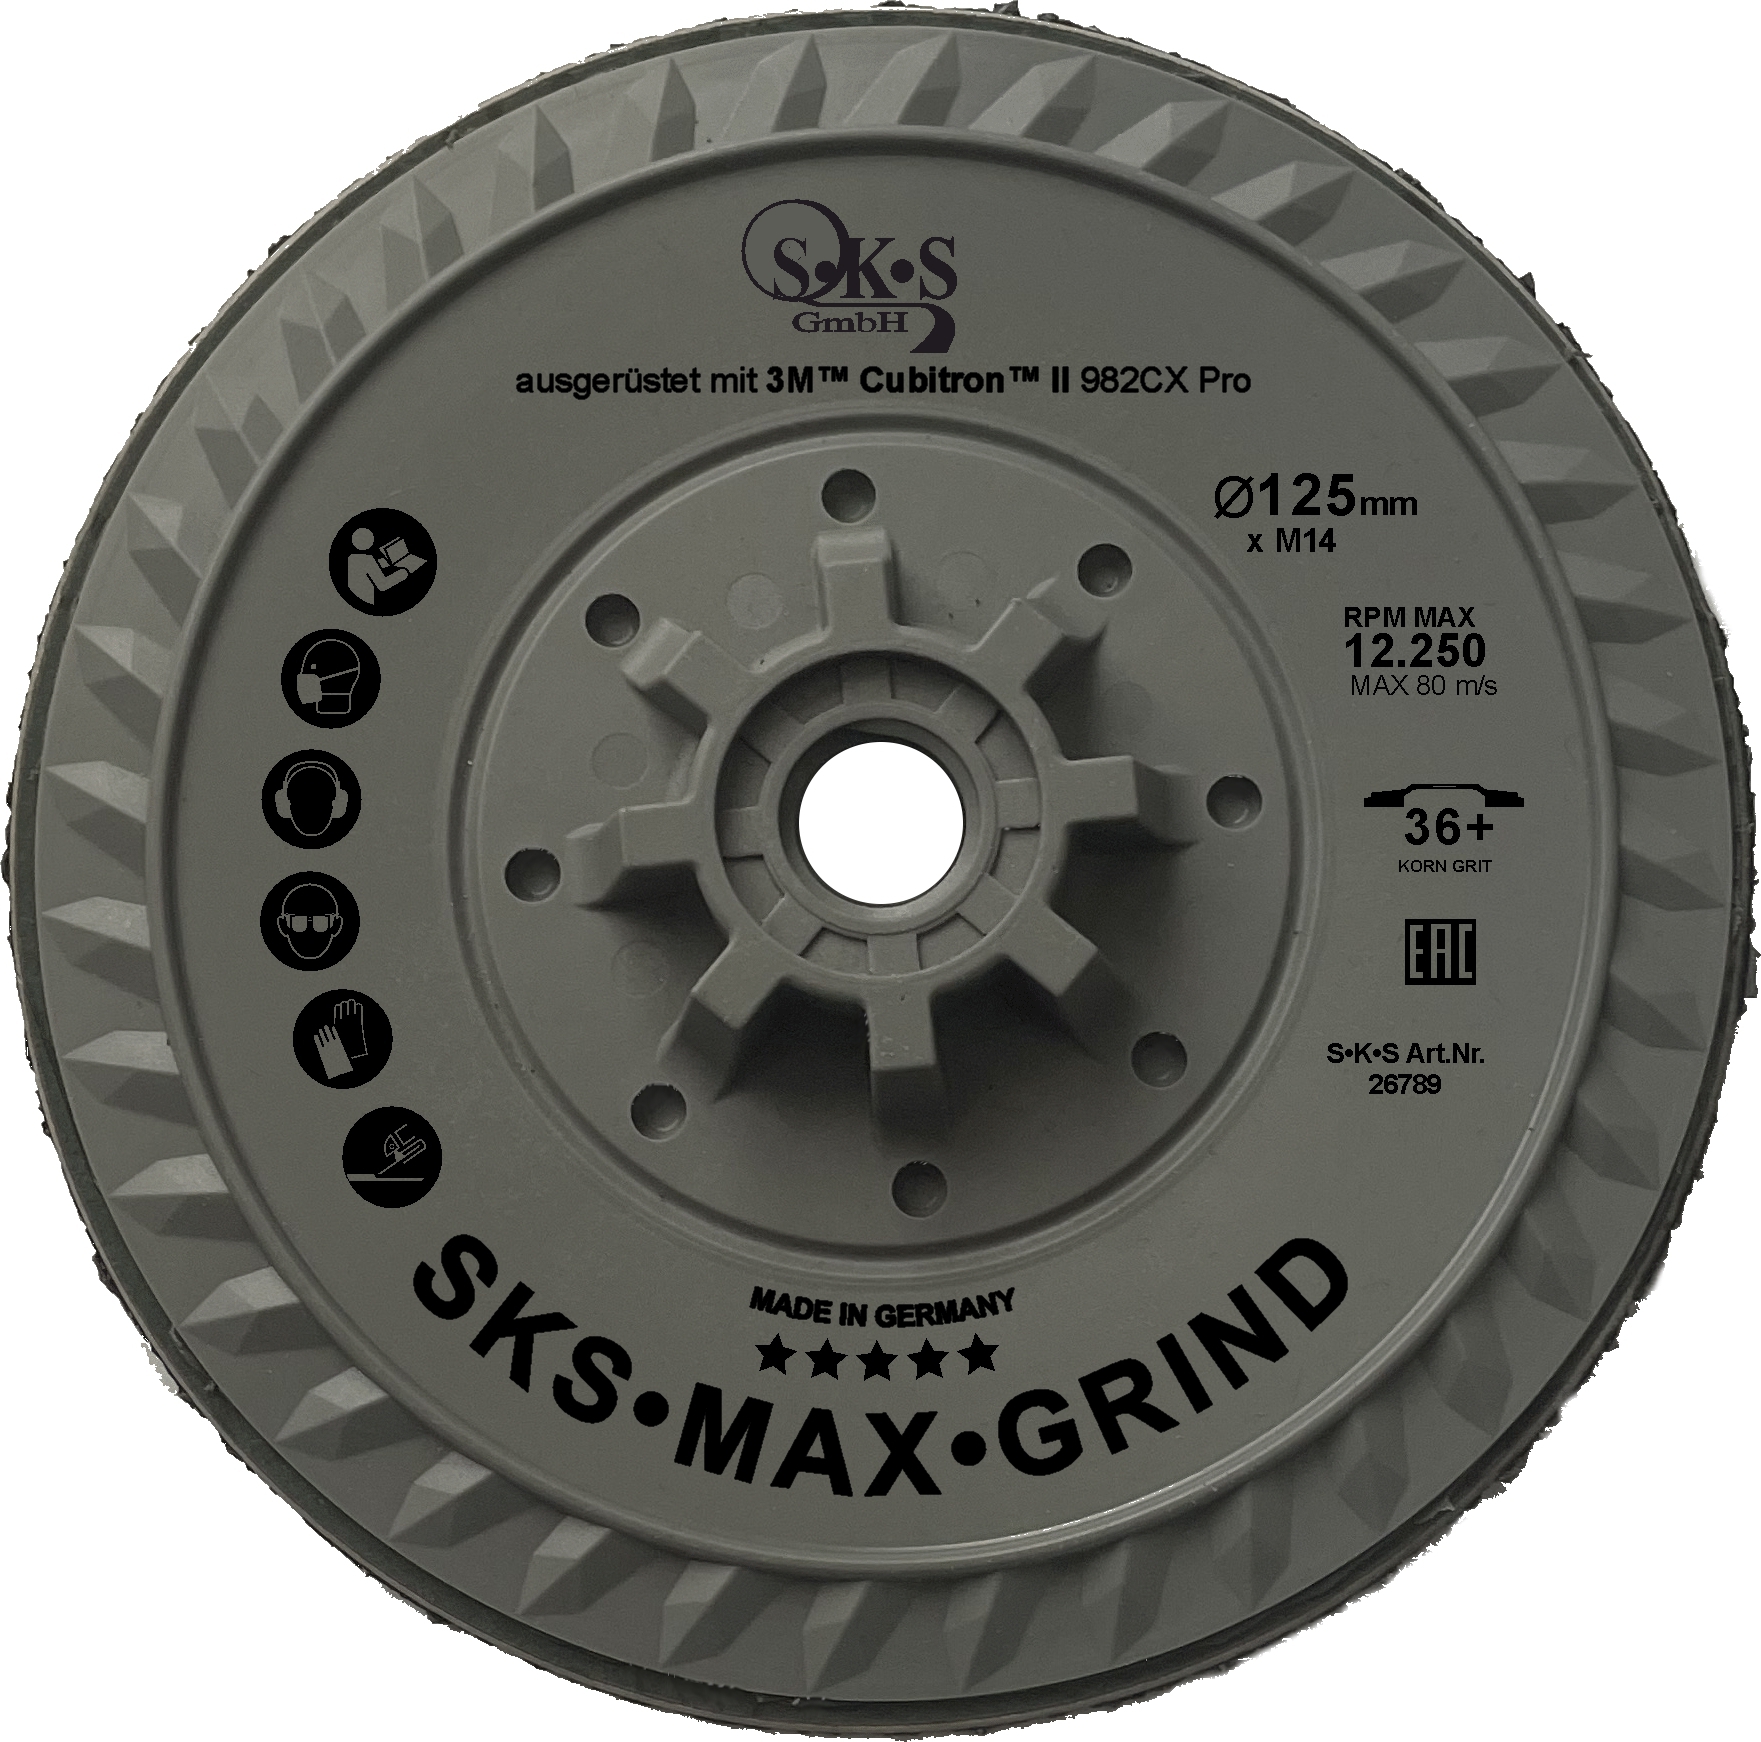 S-K-S Max Grind, 3M Cubitron II Disco in fibra 982CX Pro, 125 mm, grana 36+, con attacchi filettati M14